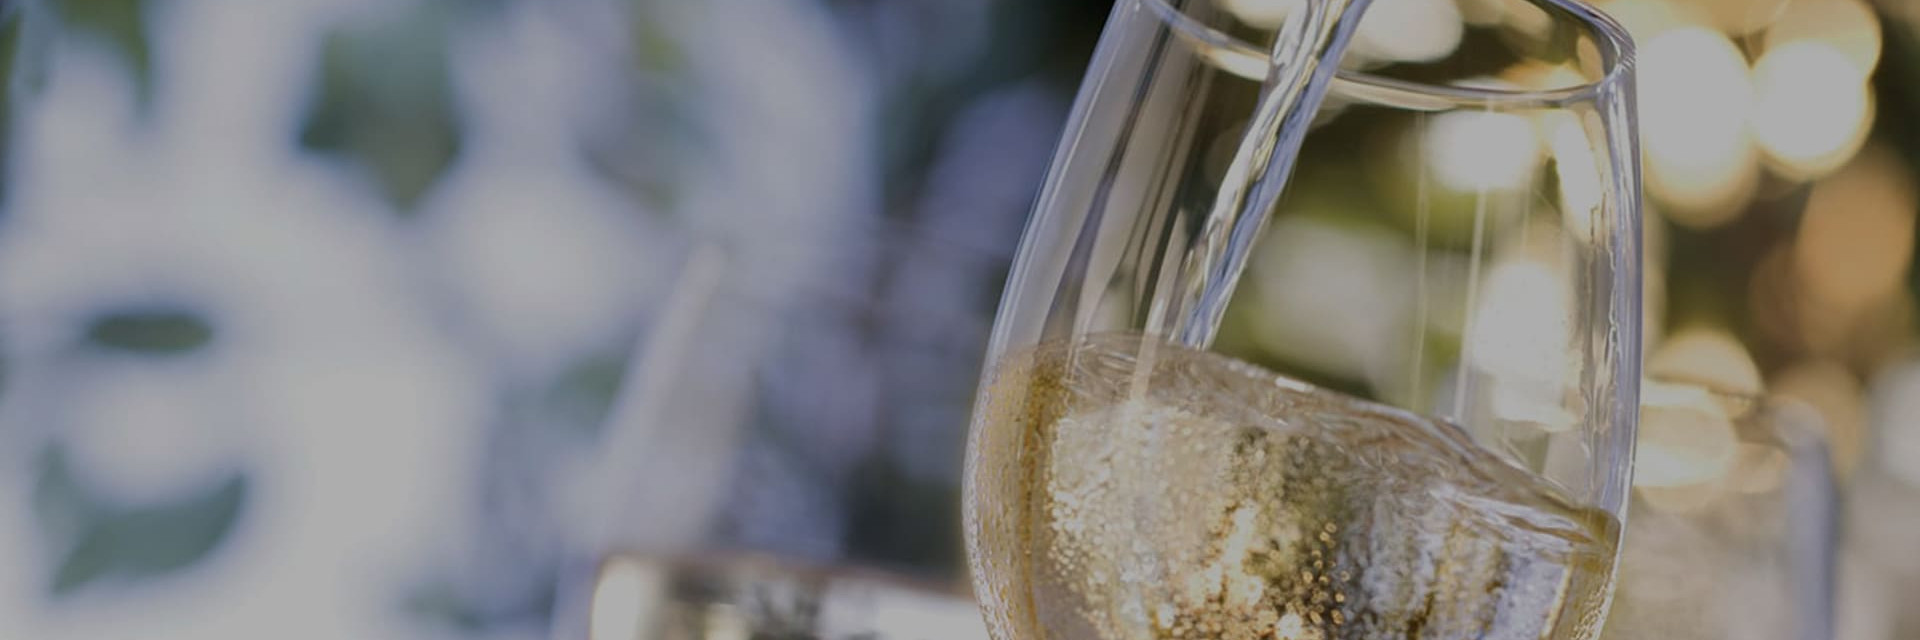 Lagertemperatur, Trinktemperatur für Rotweine, Weißweine, Roséweine oder Champagner. Erfahren Sie alles Wissenswerte über die sorgfältige Aufbewahrung von Weinen.